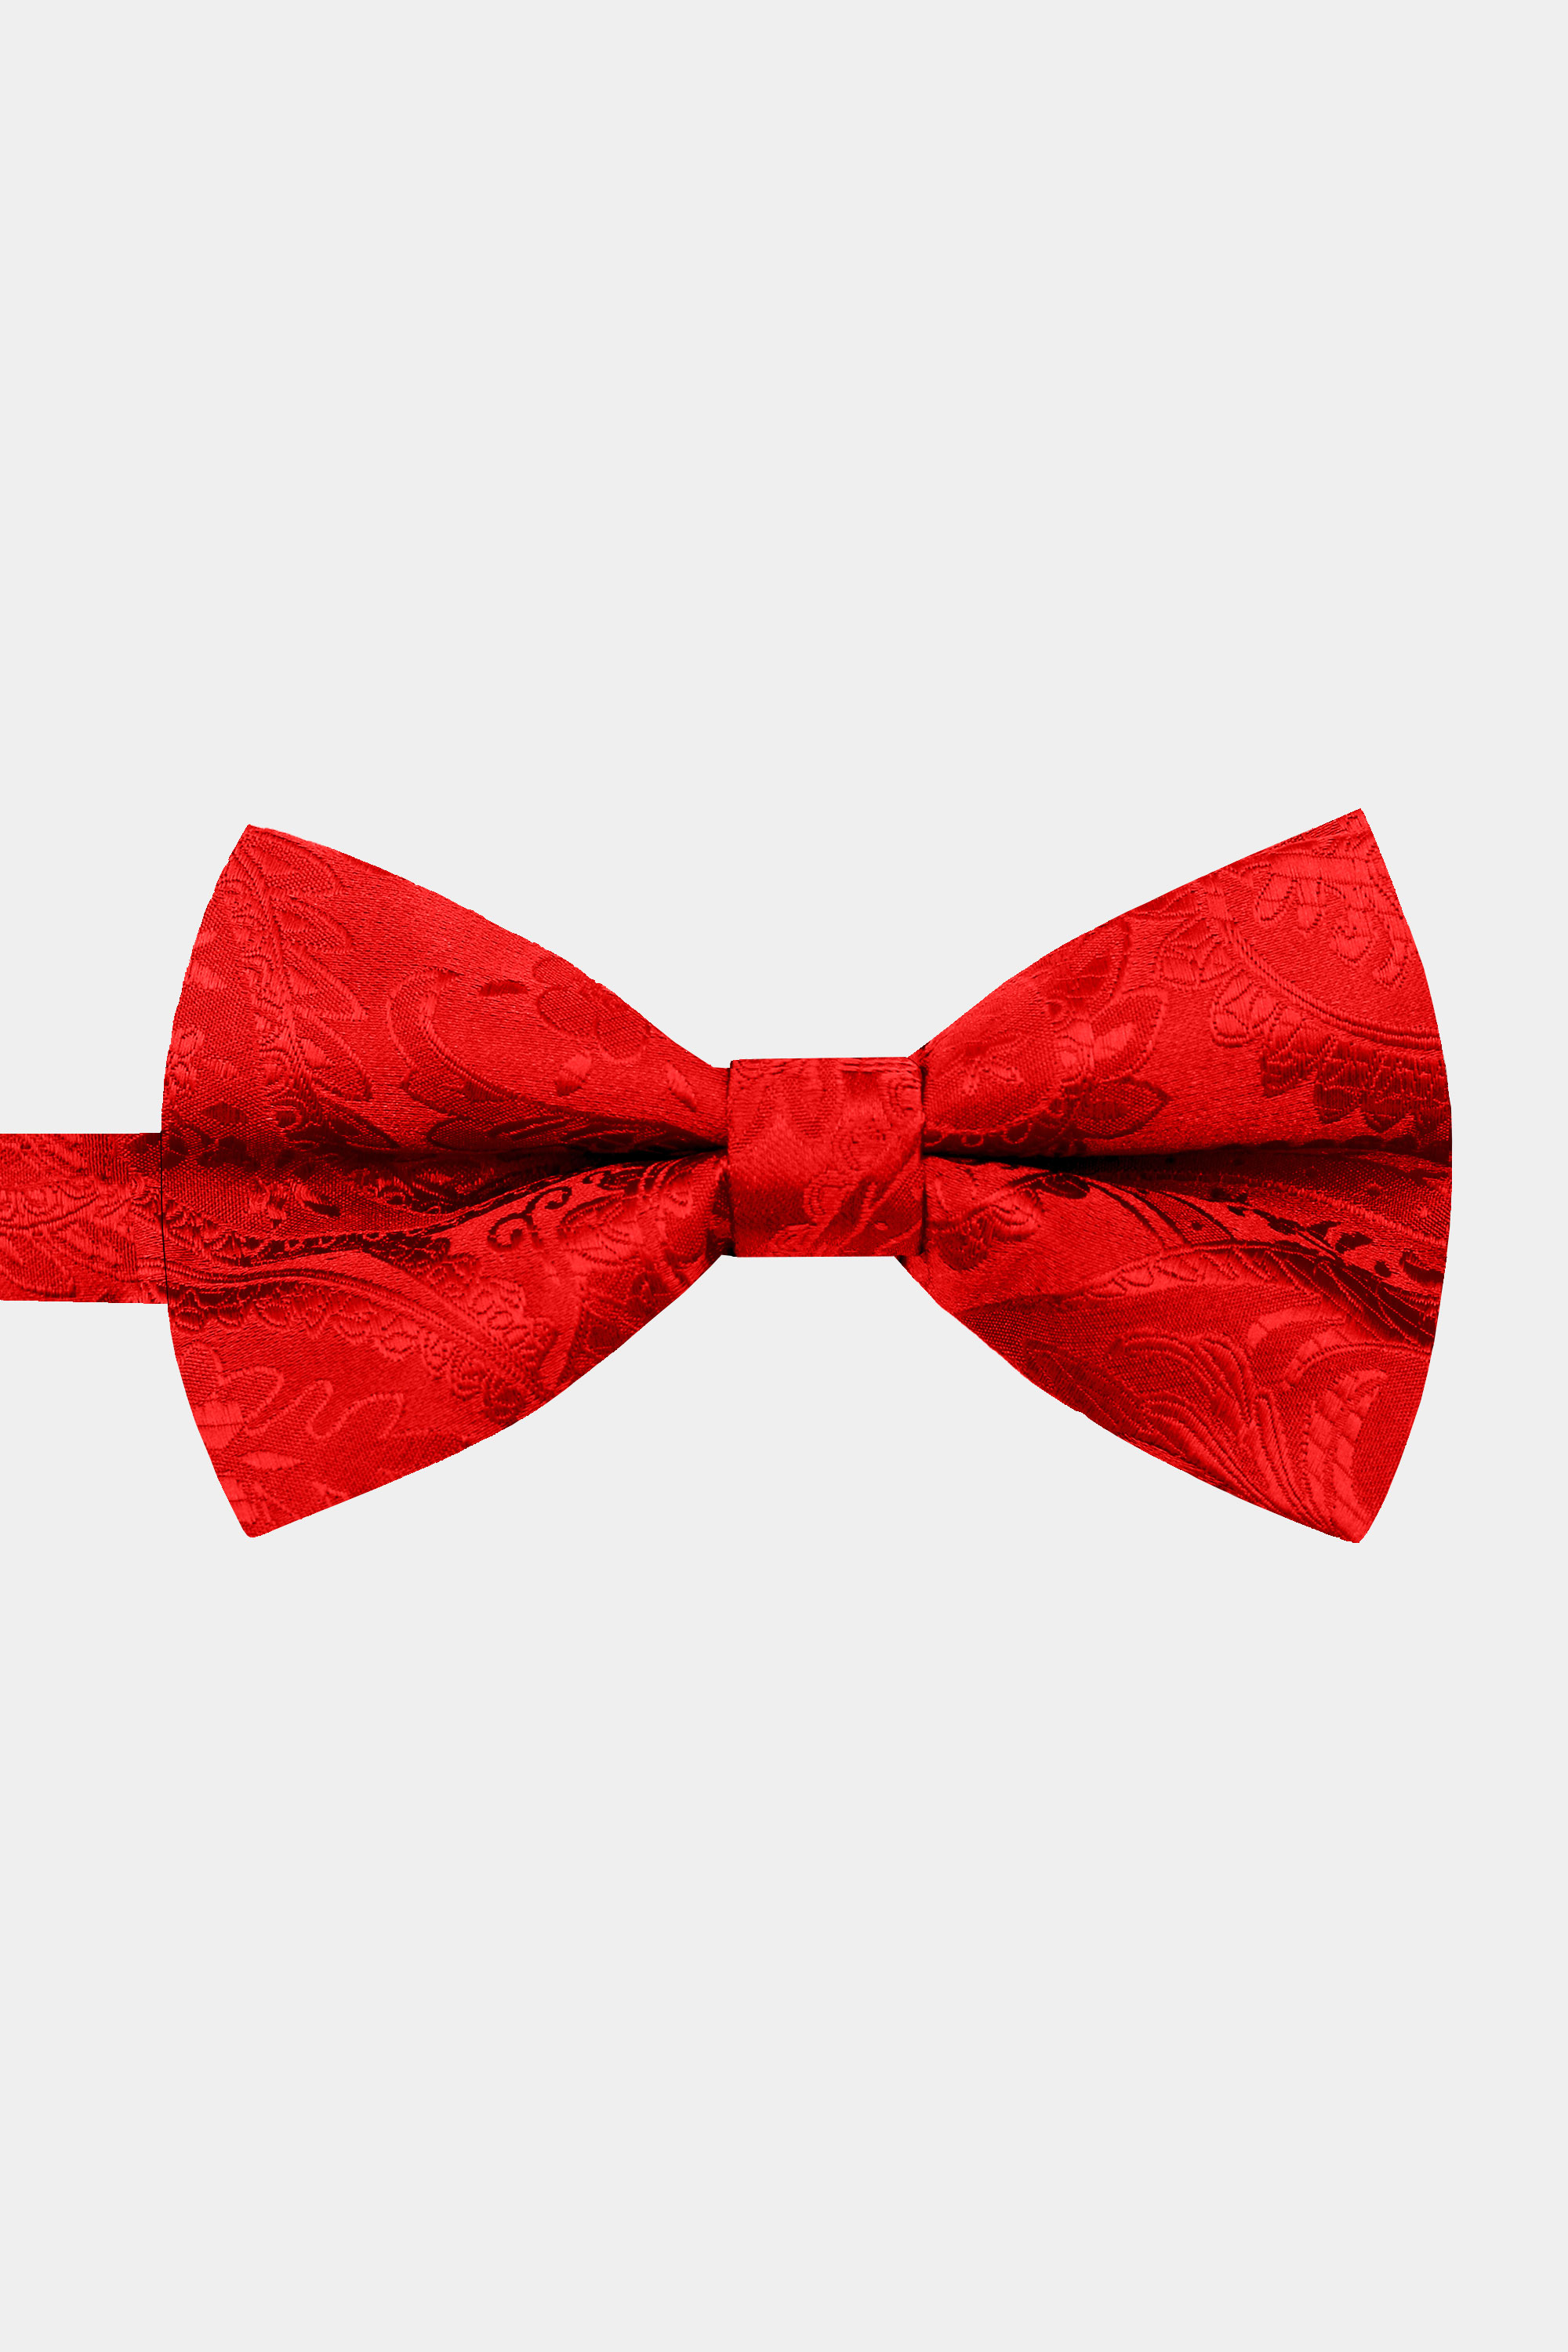 Red Bow Tie and Suspenders Set | Gentleman's Guru